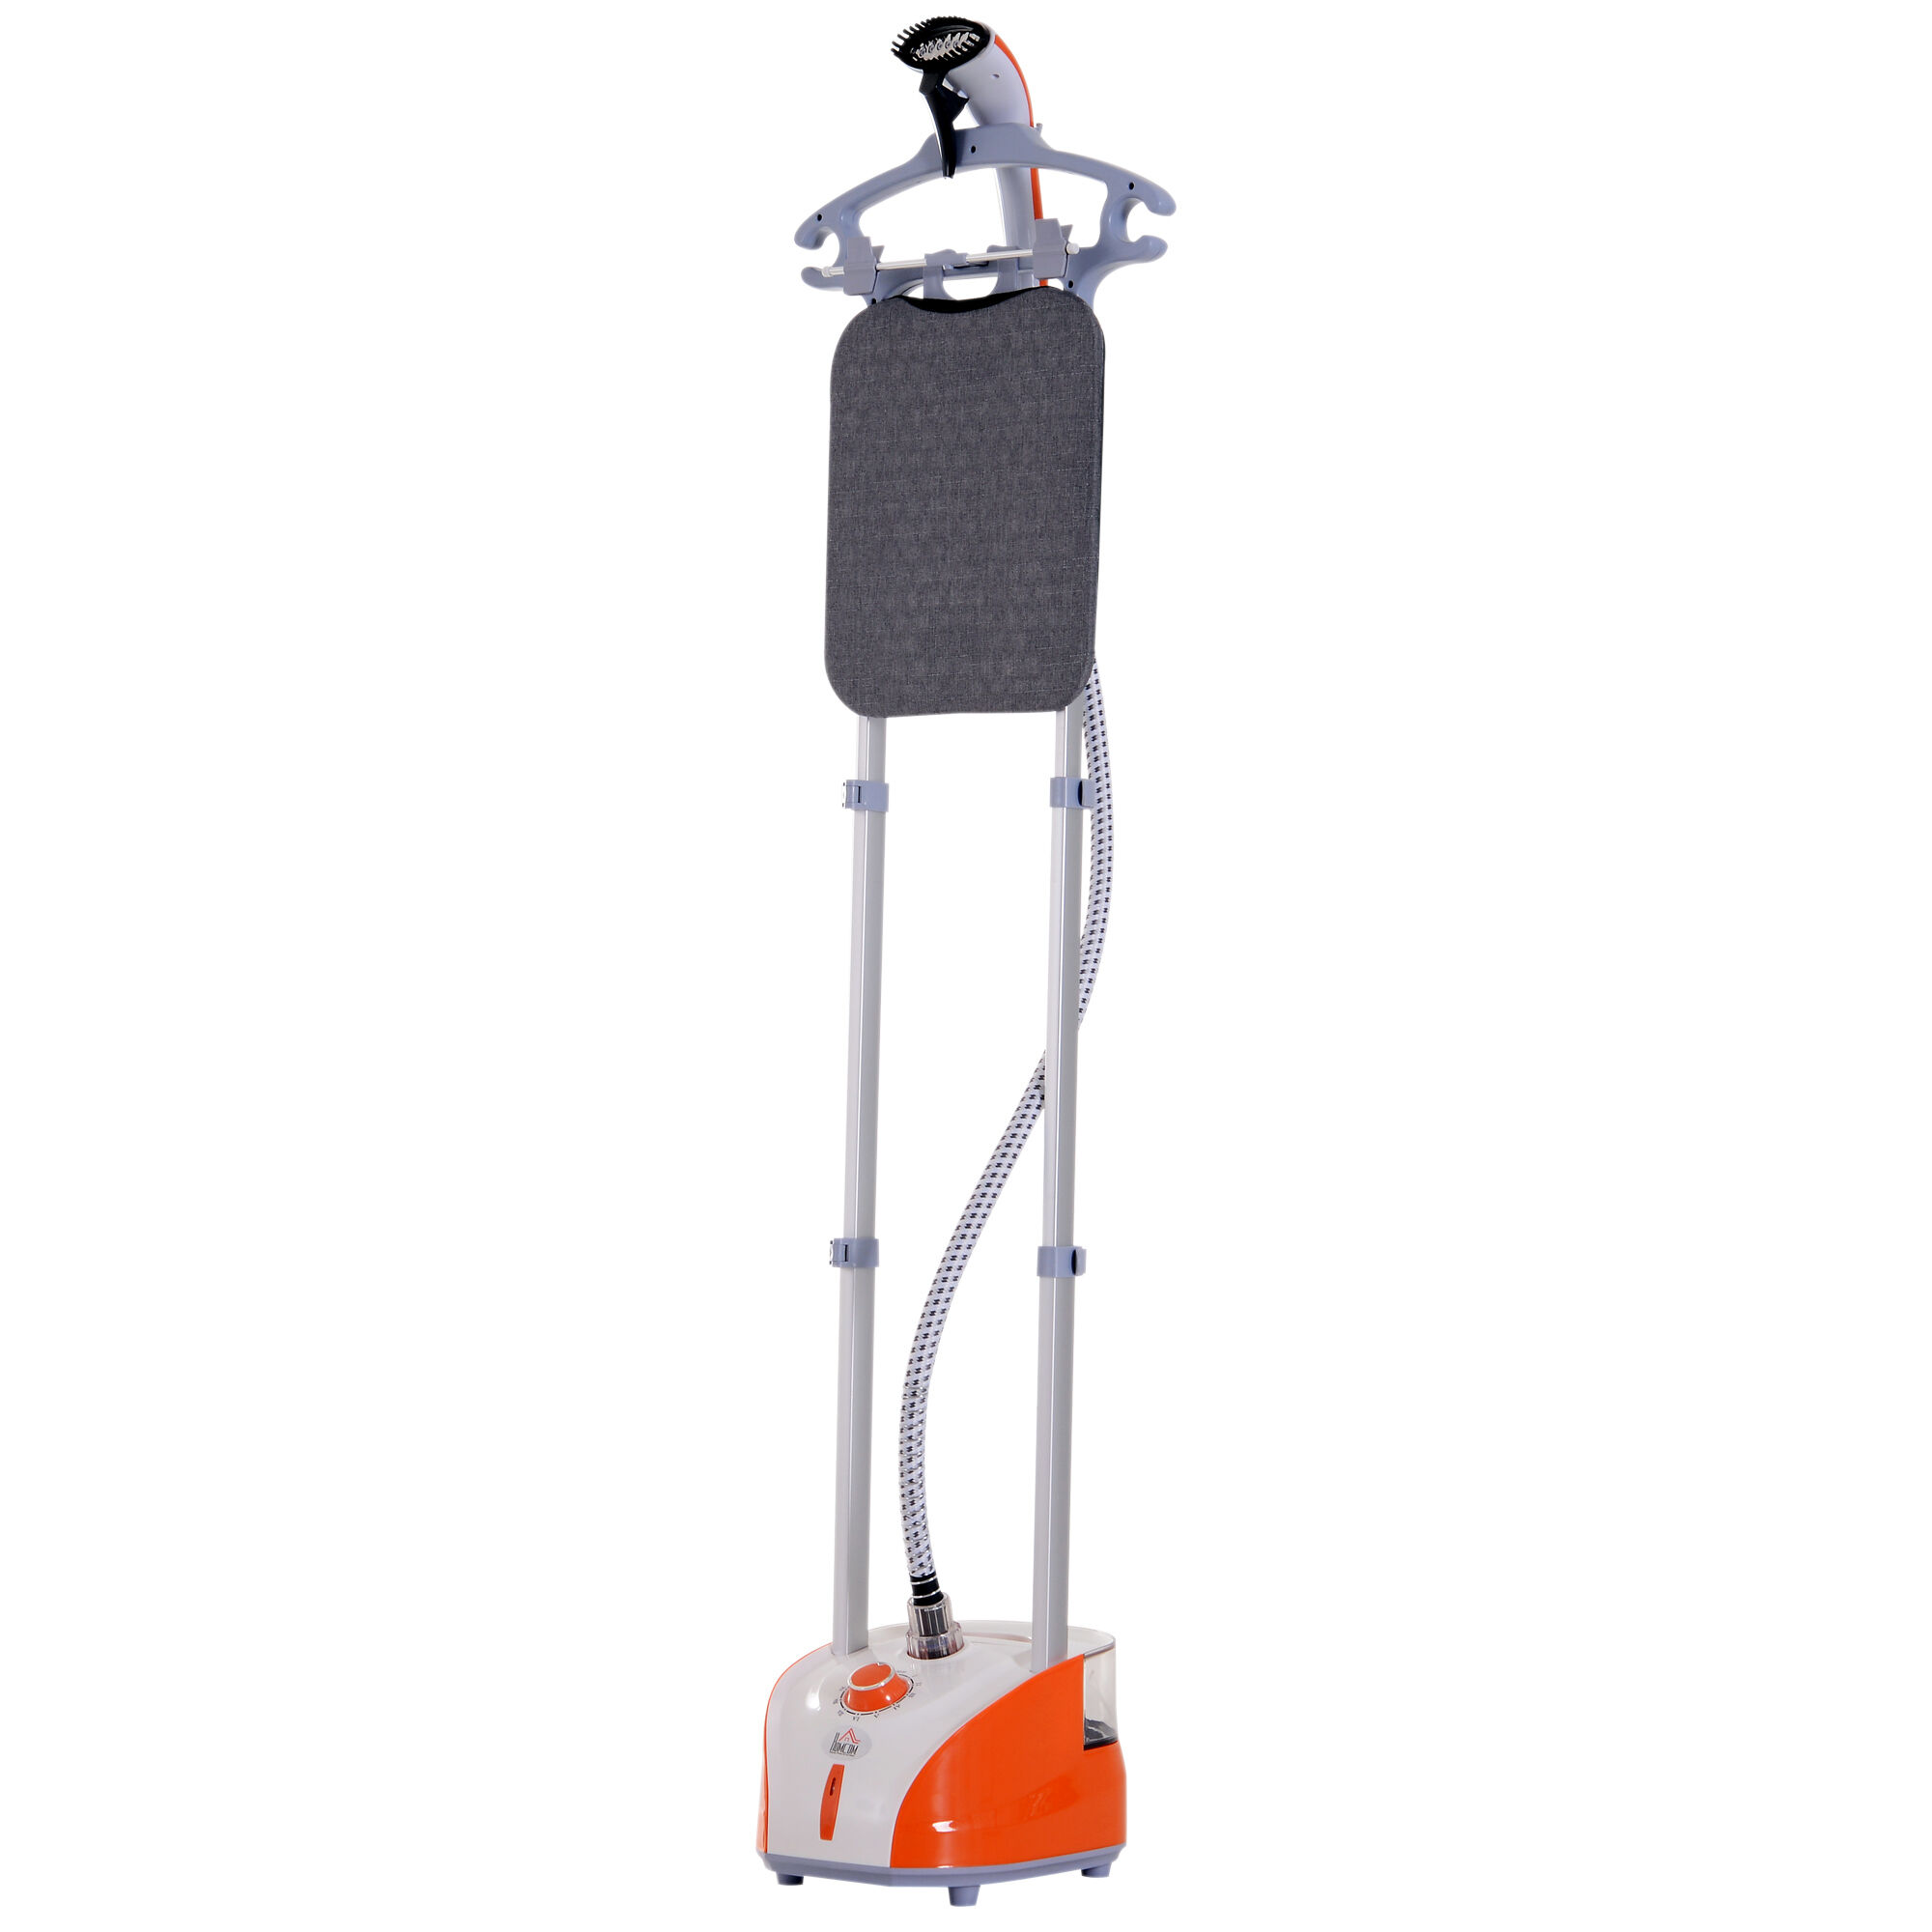 Homcom Stiratrice a vapore verticale stiratrice verticale portatile stiratrice verticale vapore portatile Arancione, grigio 35 Ã— 25 Ã— 23cm